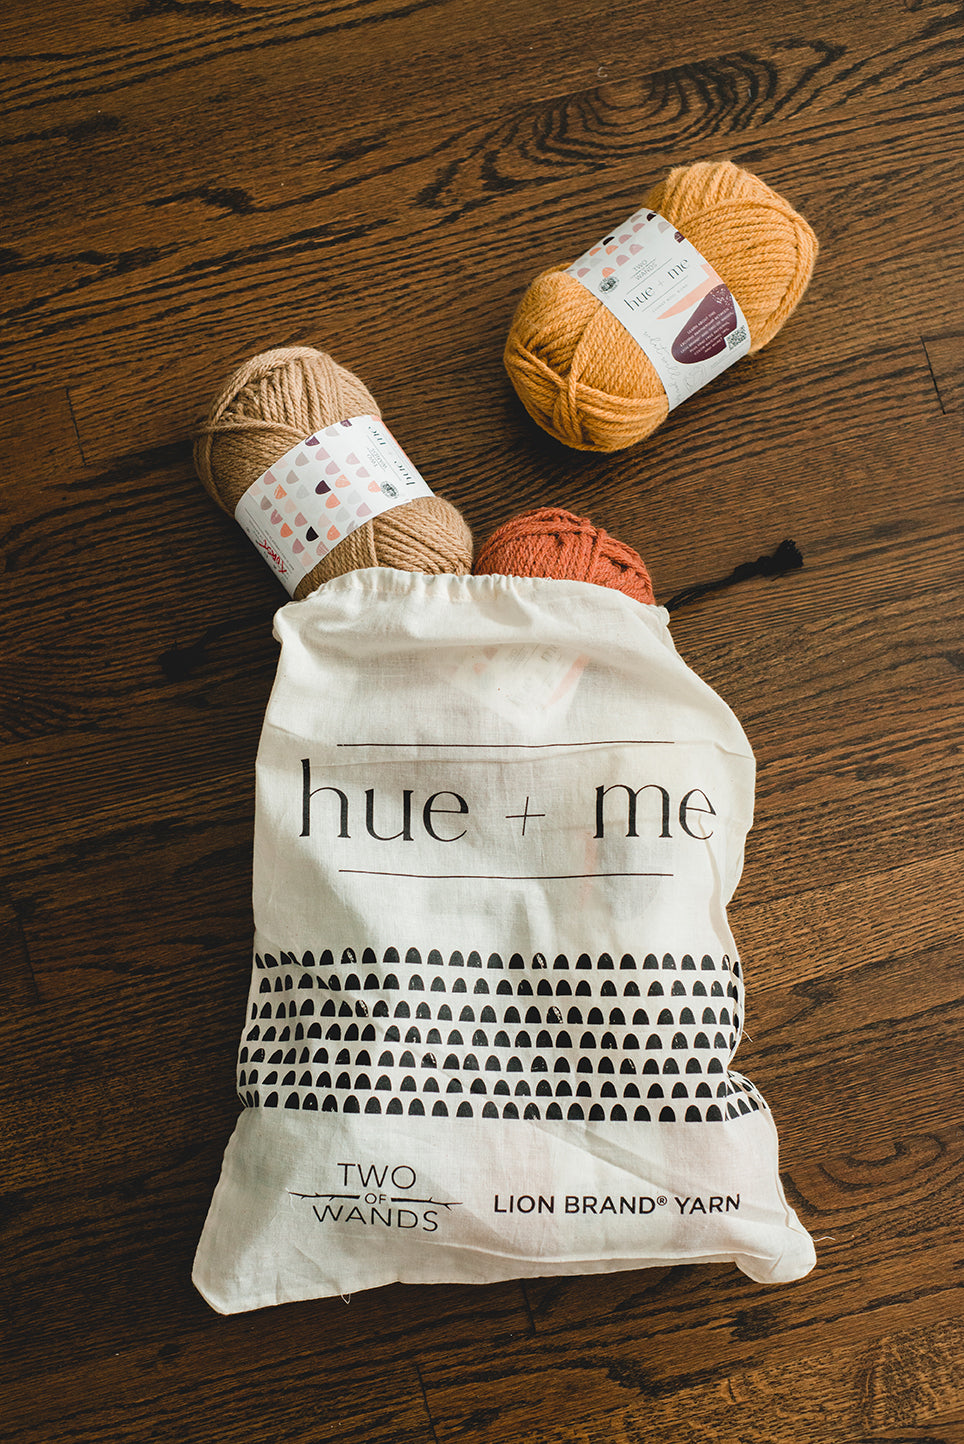 Hue + Me Yarn - Arrowwood  Yarn, Hue, Lion brand yarn